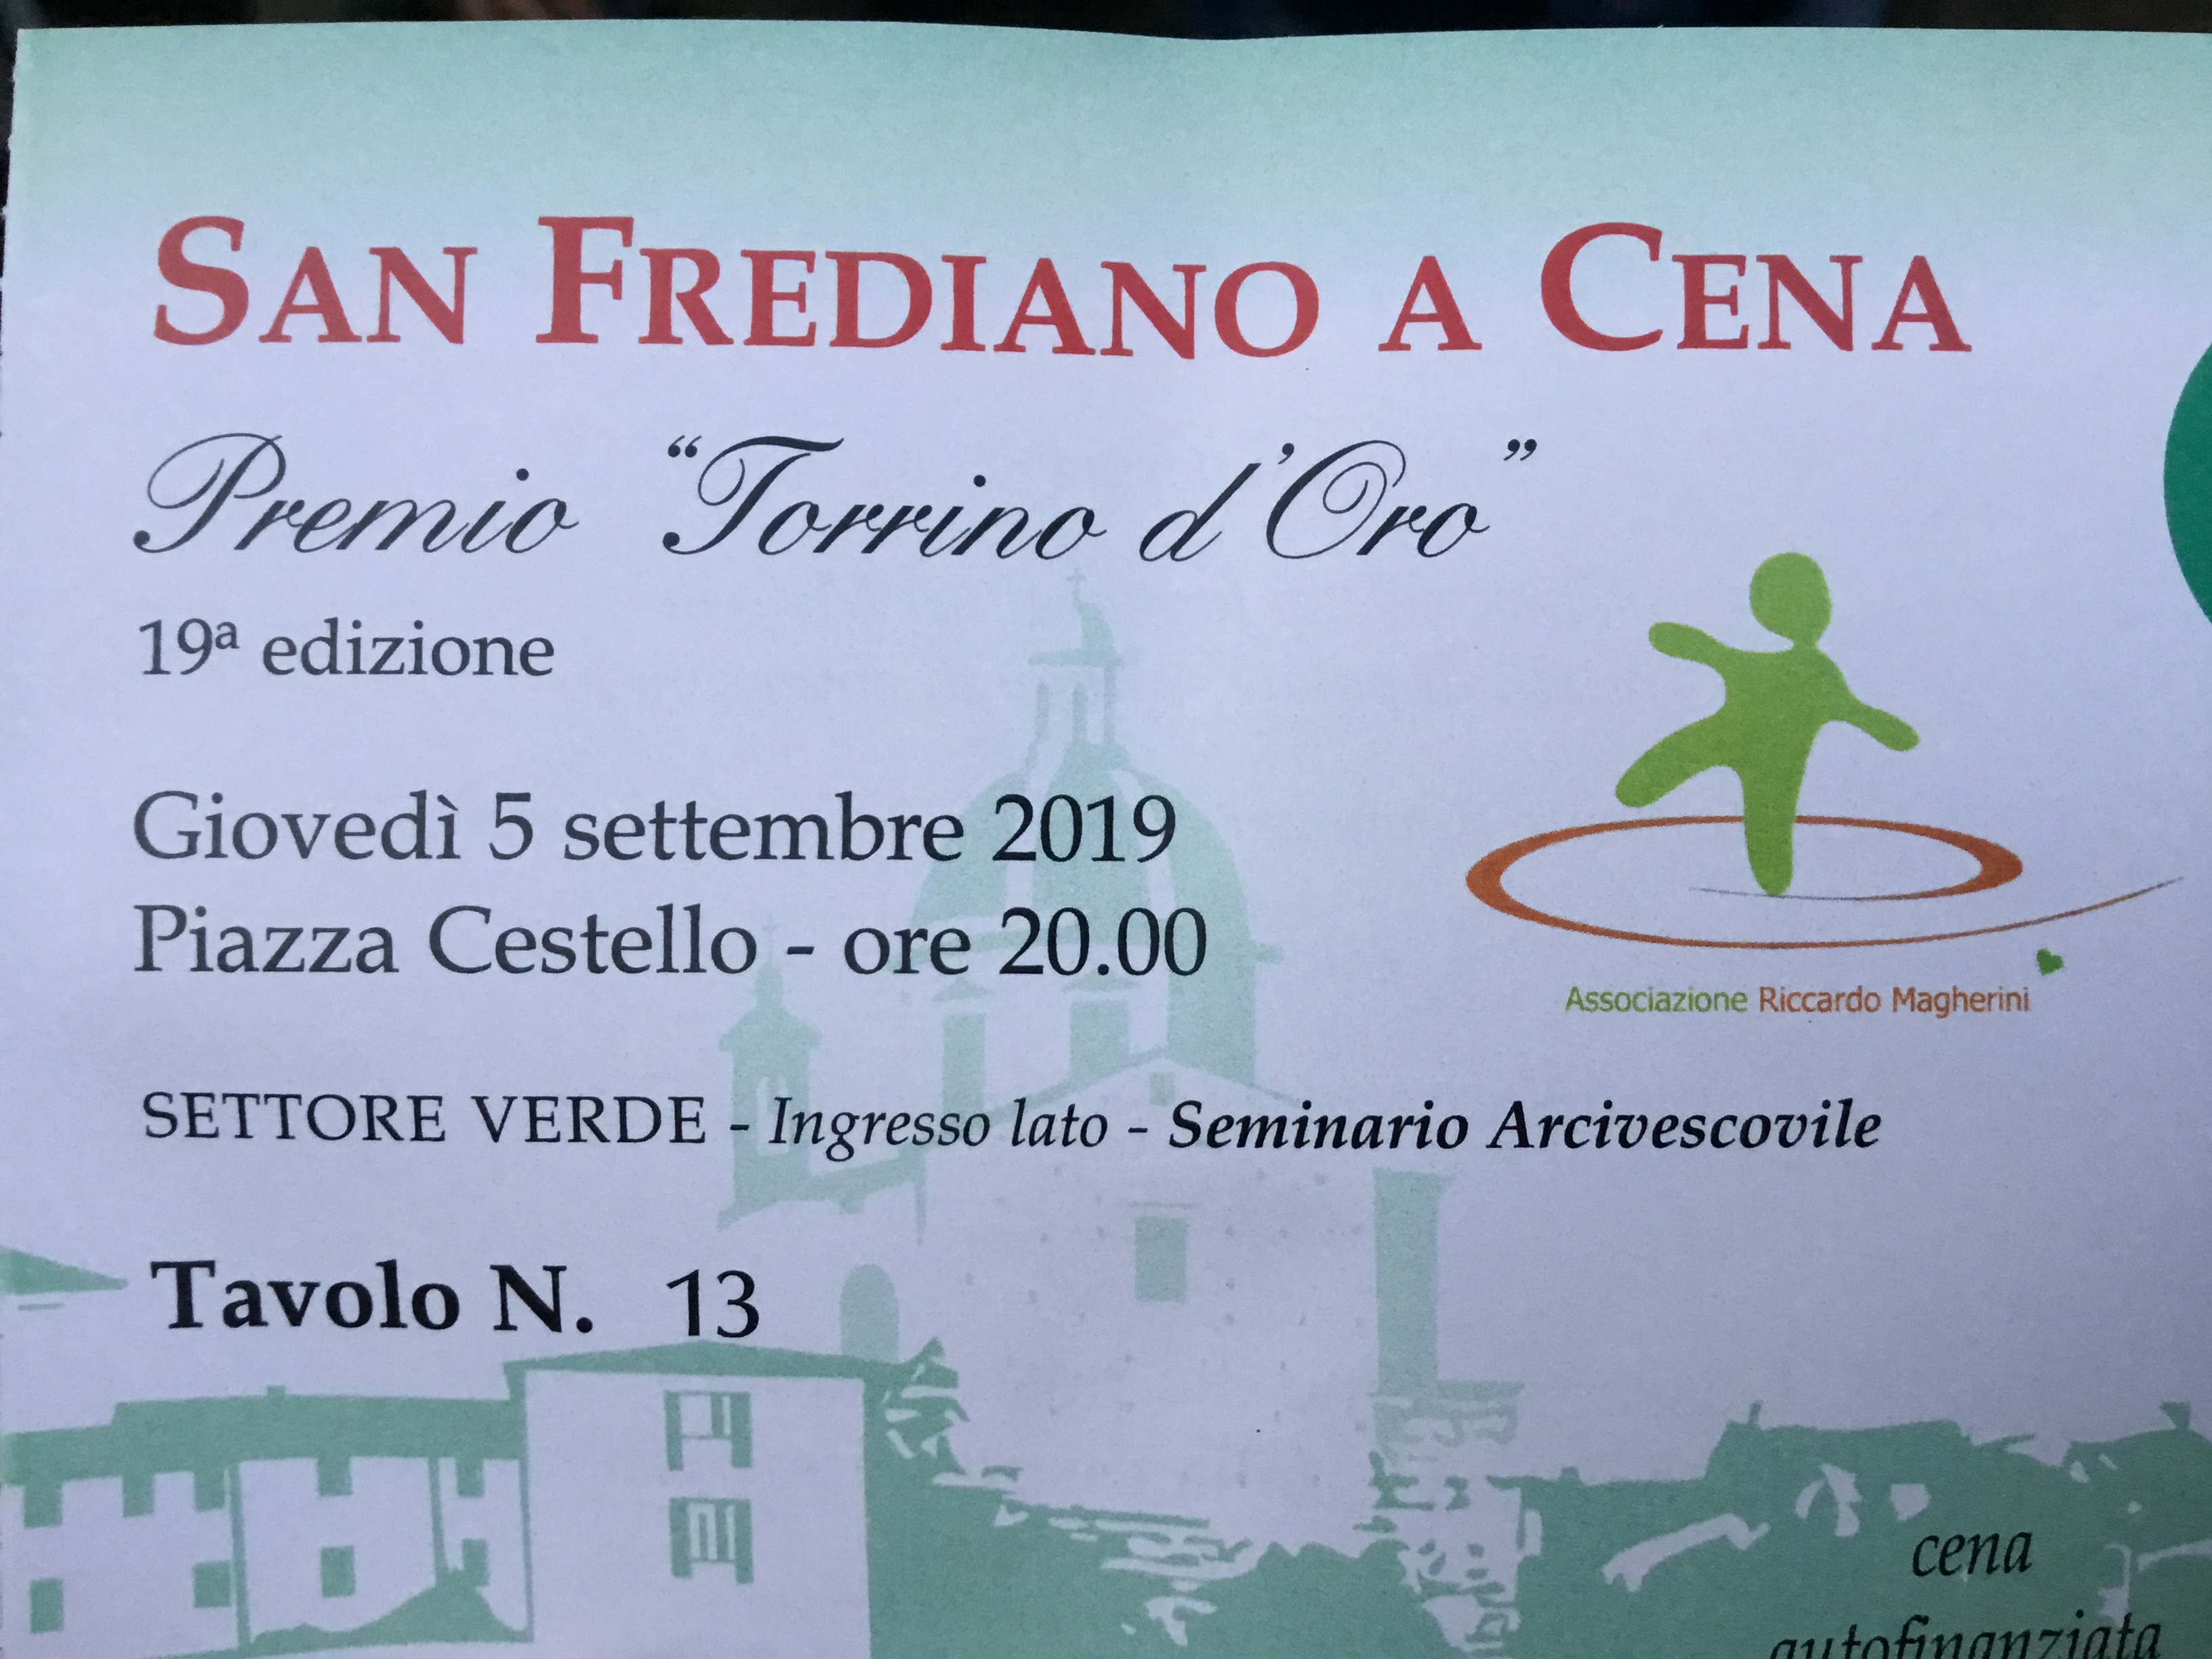 San Frediano a cena Torrino d’oro 2019 – Foto Giornalista Franco Mariani (2)